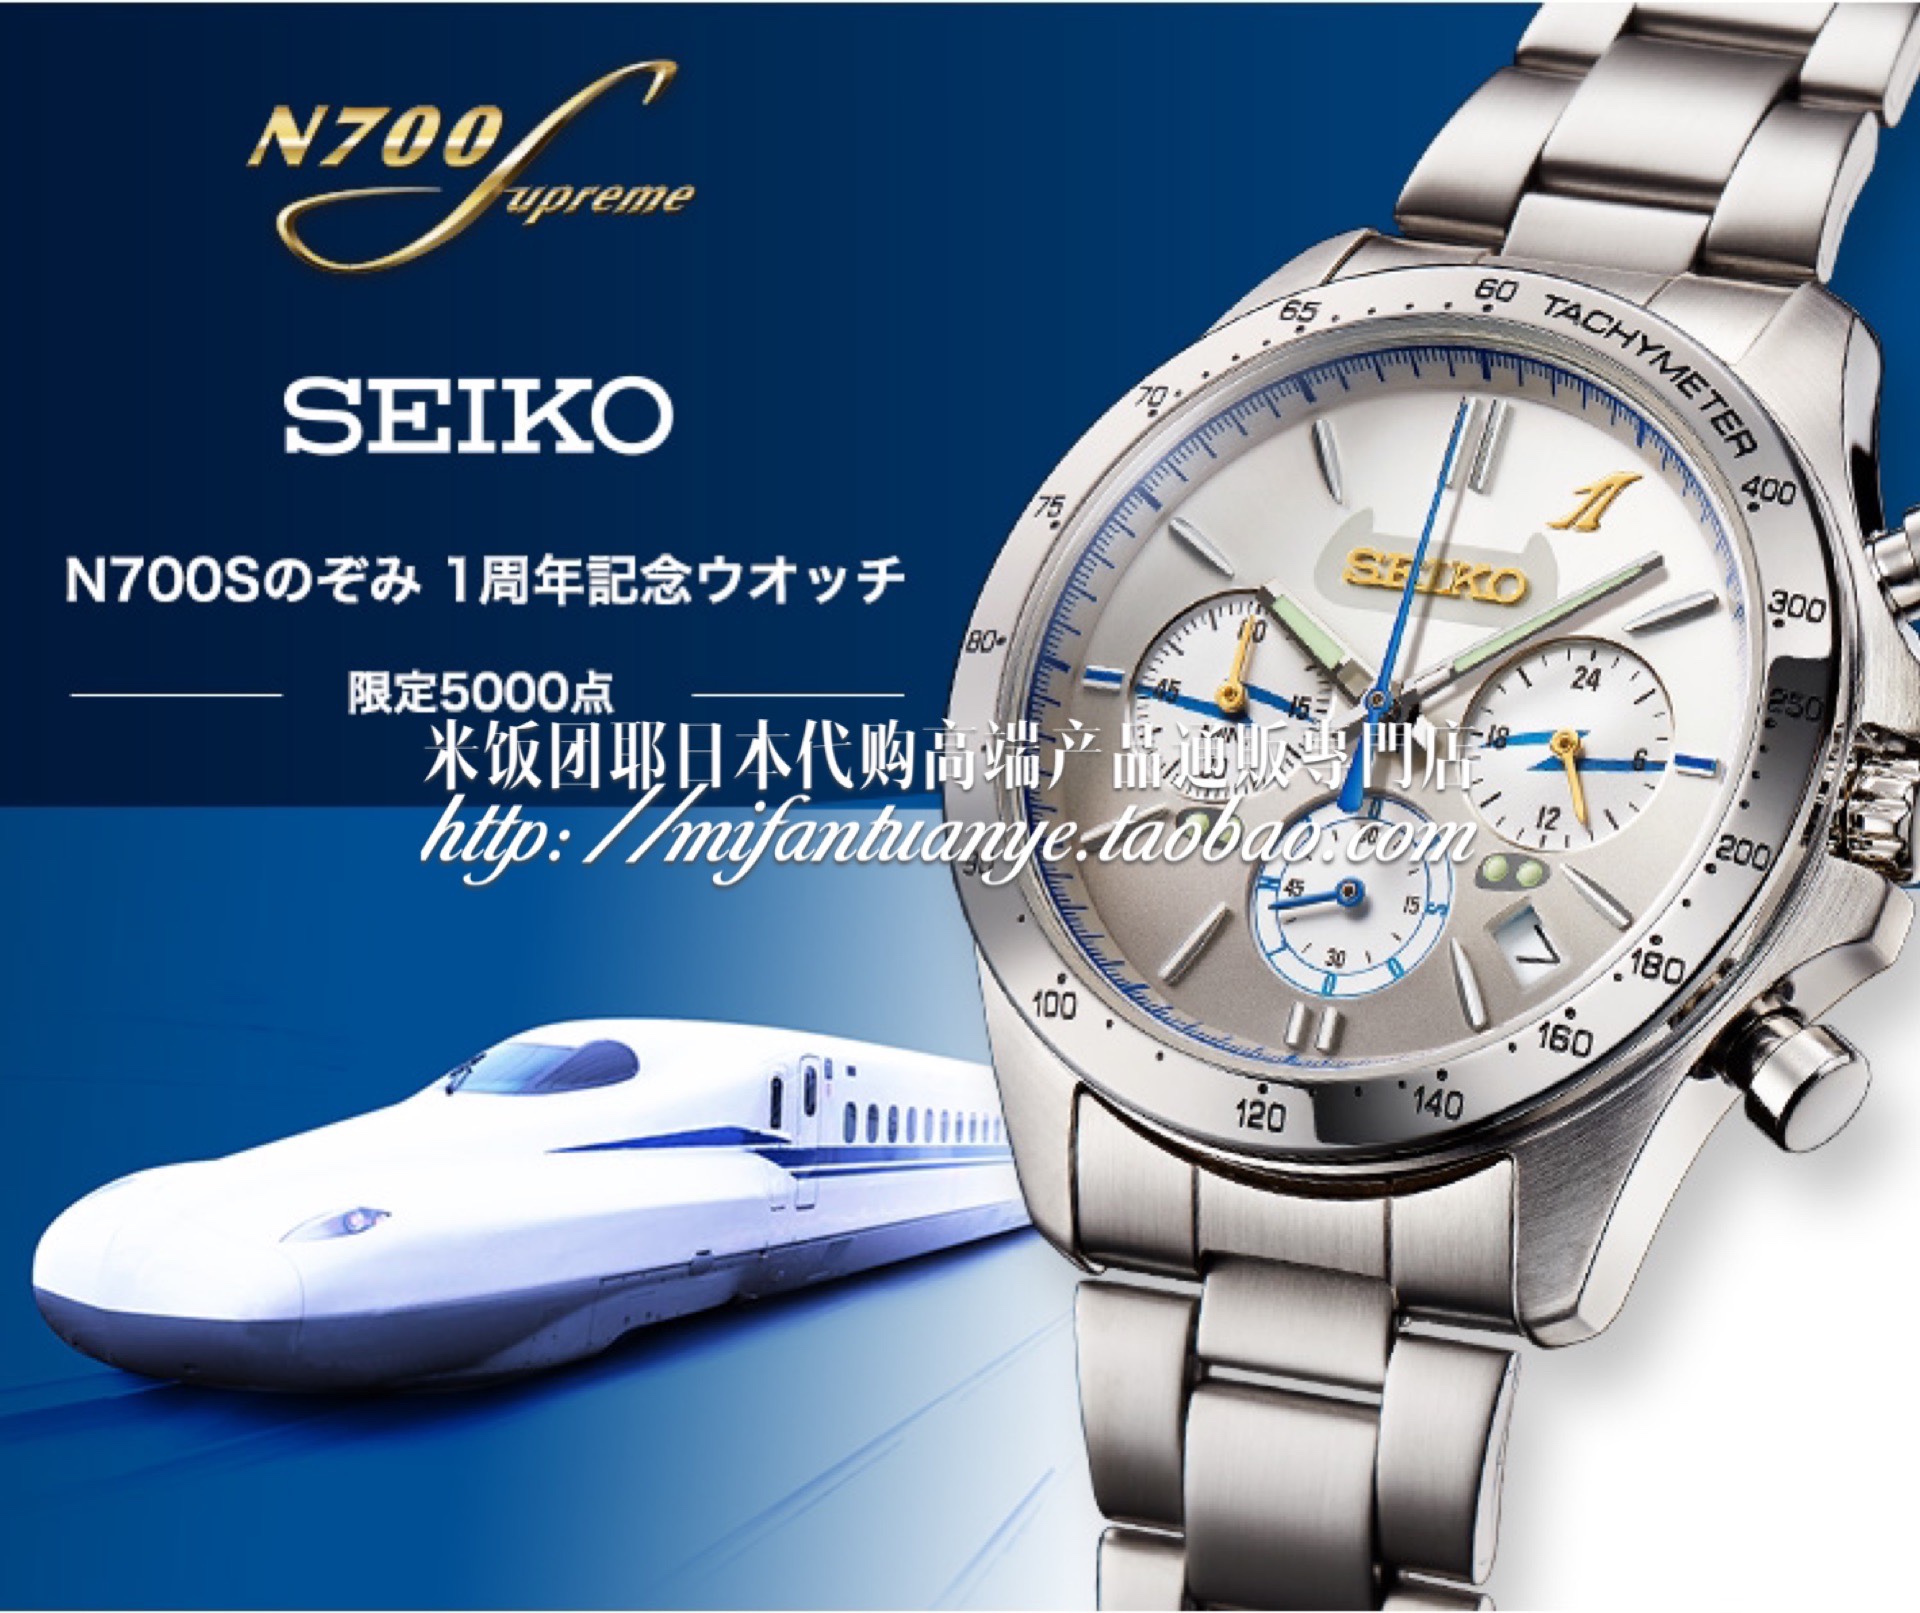 米饭团日本代购 N700S Nozomi新干线 1周年 精工SEIKO 限量版手表